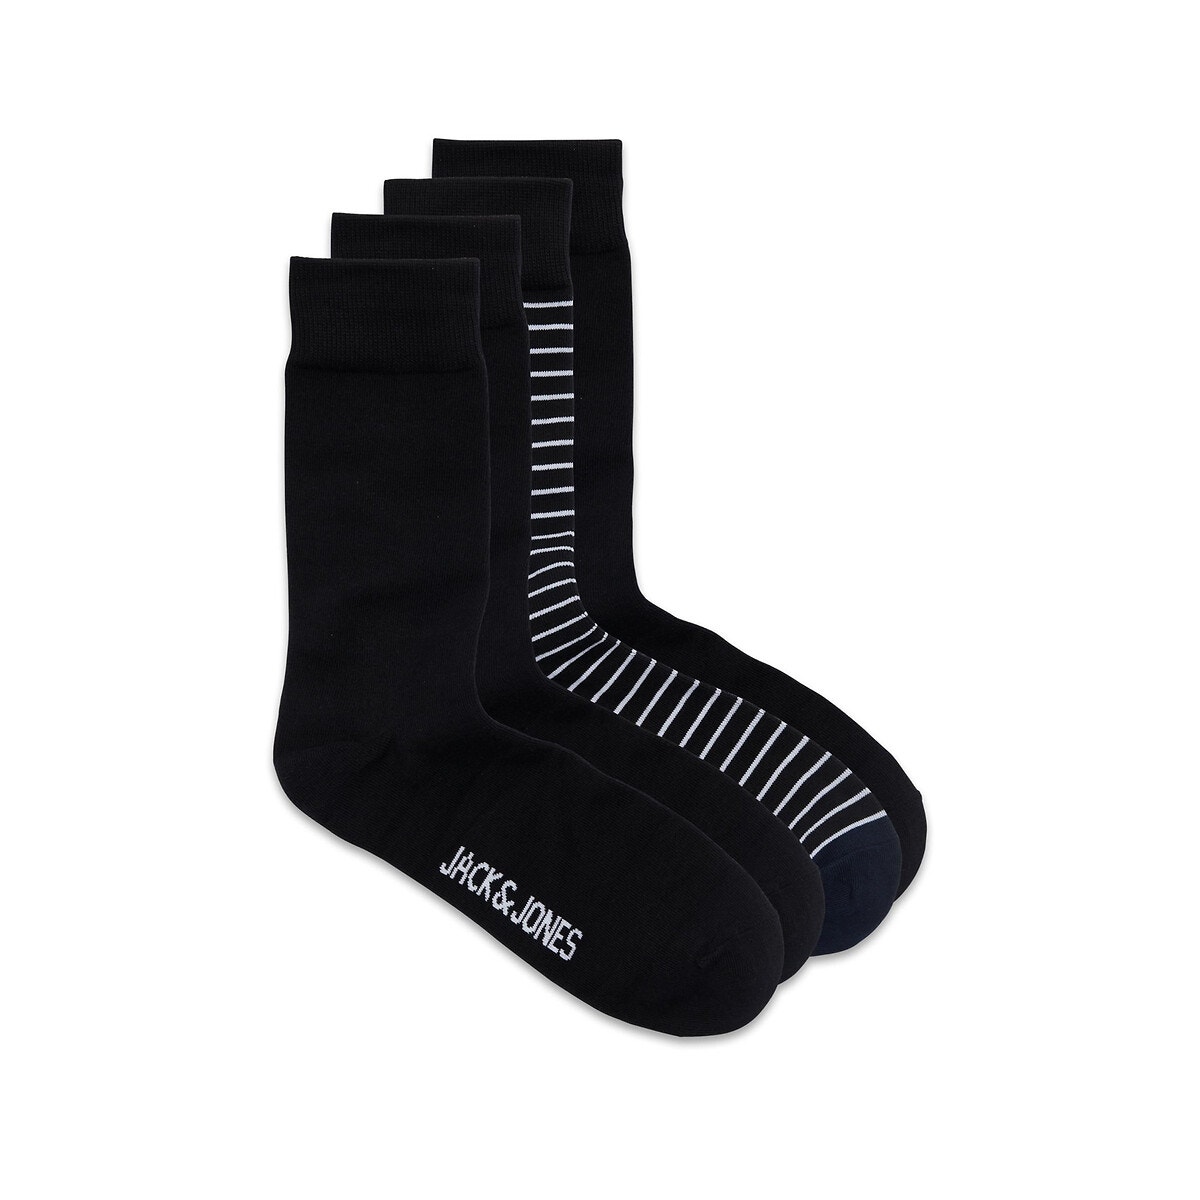 Σετ δώρου: 5 ζευγάρια κάλτσες